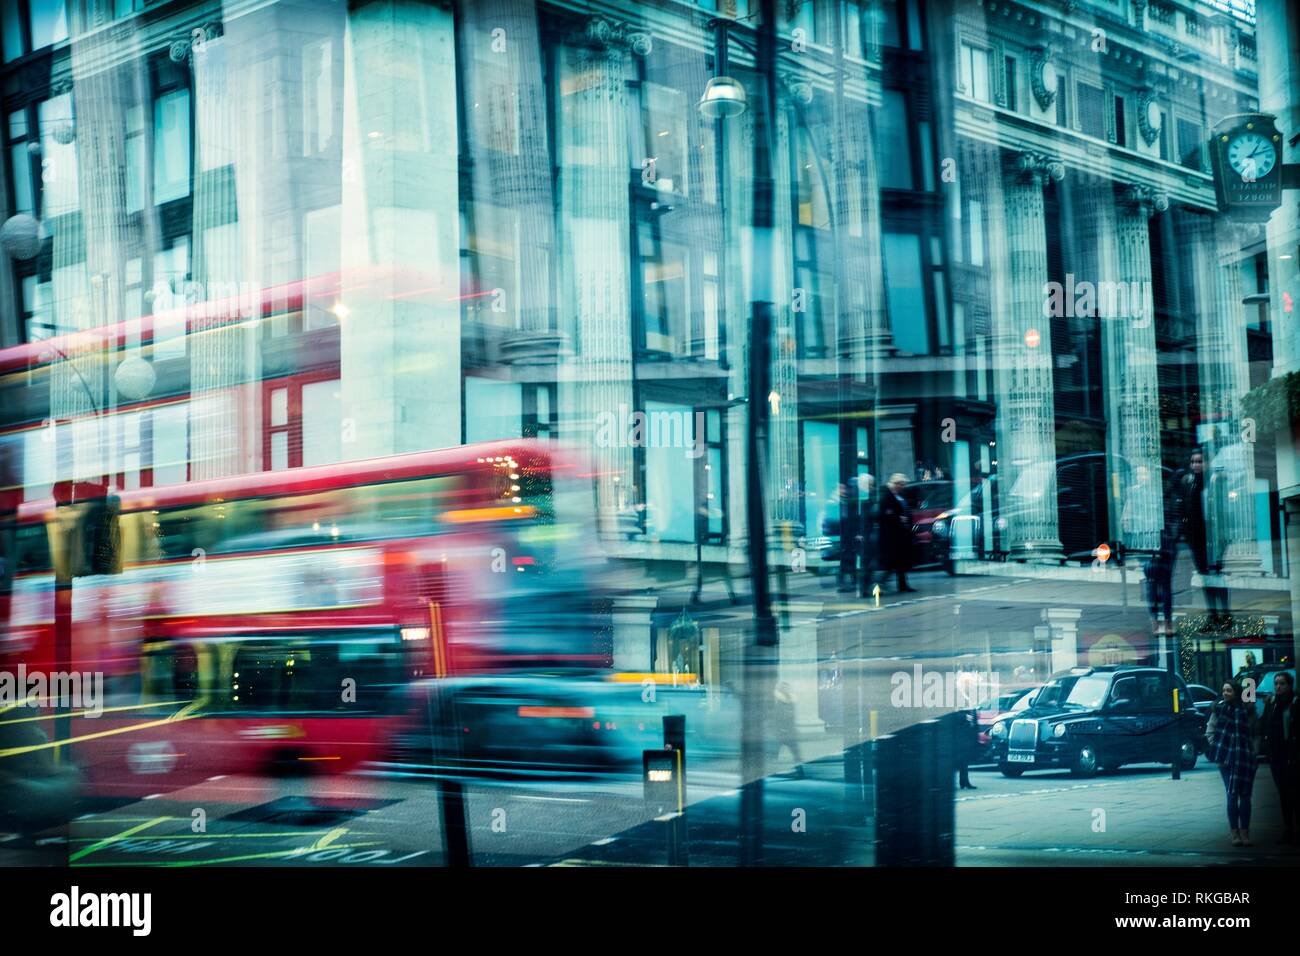 Scène de rue, le trafic entre Oxford street, bus, taxis, personnes. Londres, Angleterre. Banque D'Images